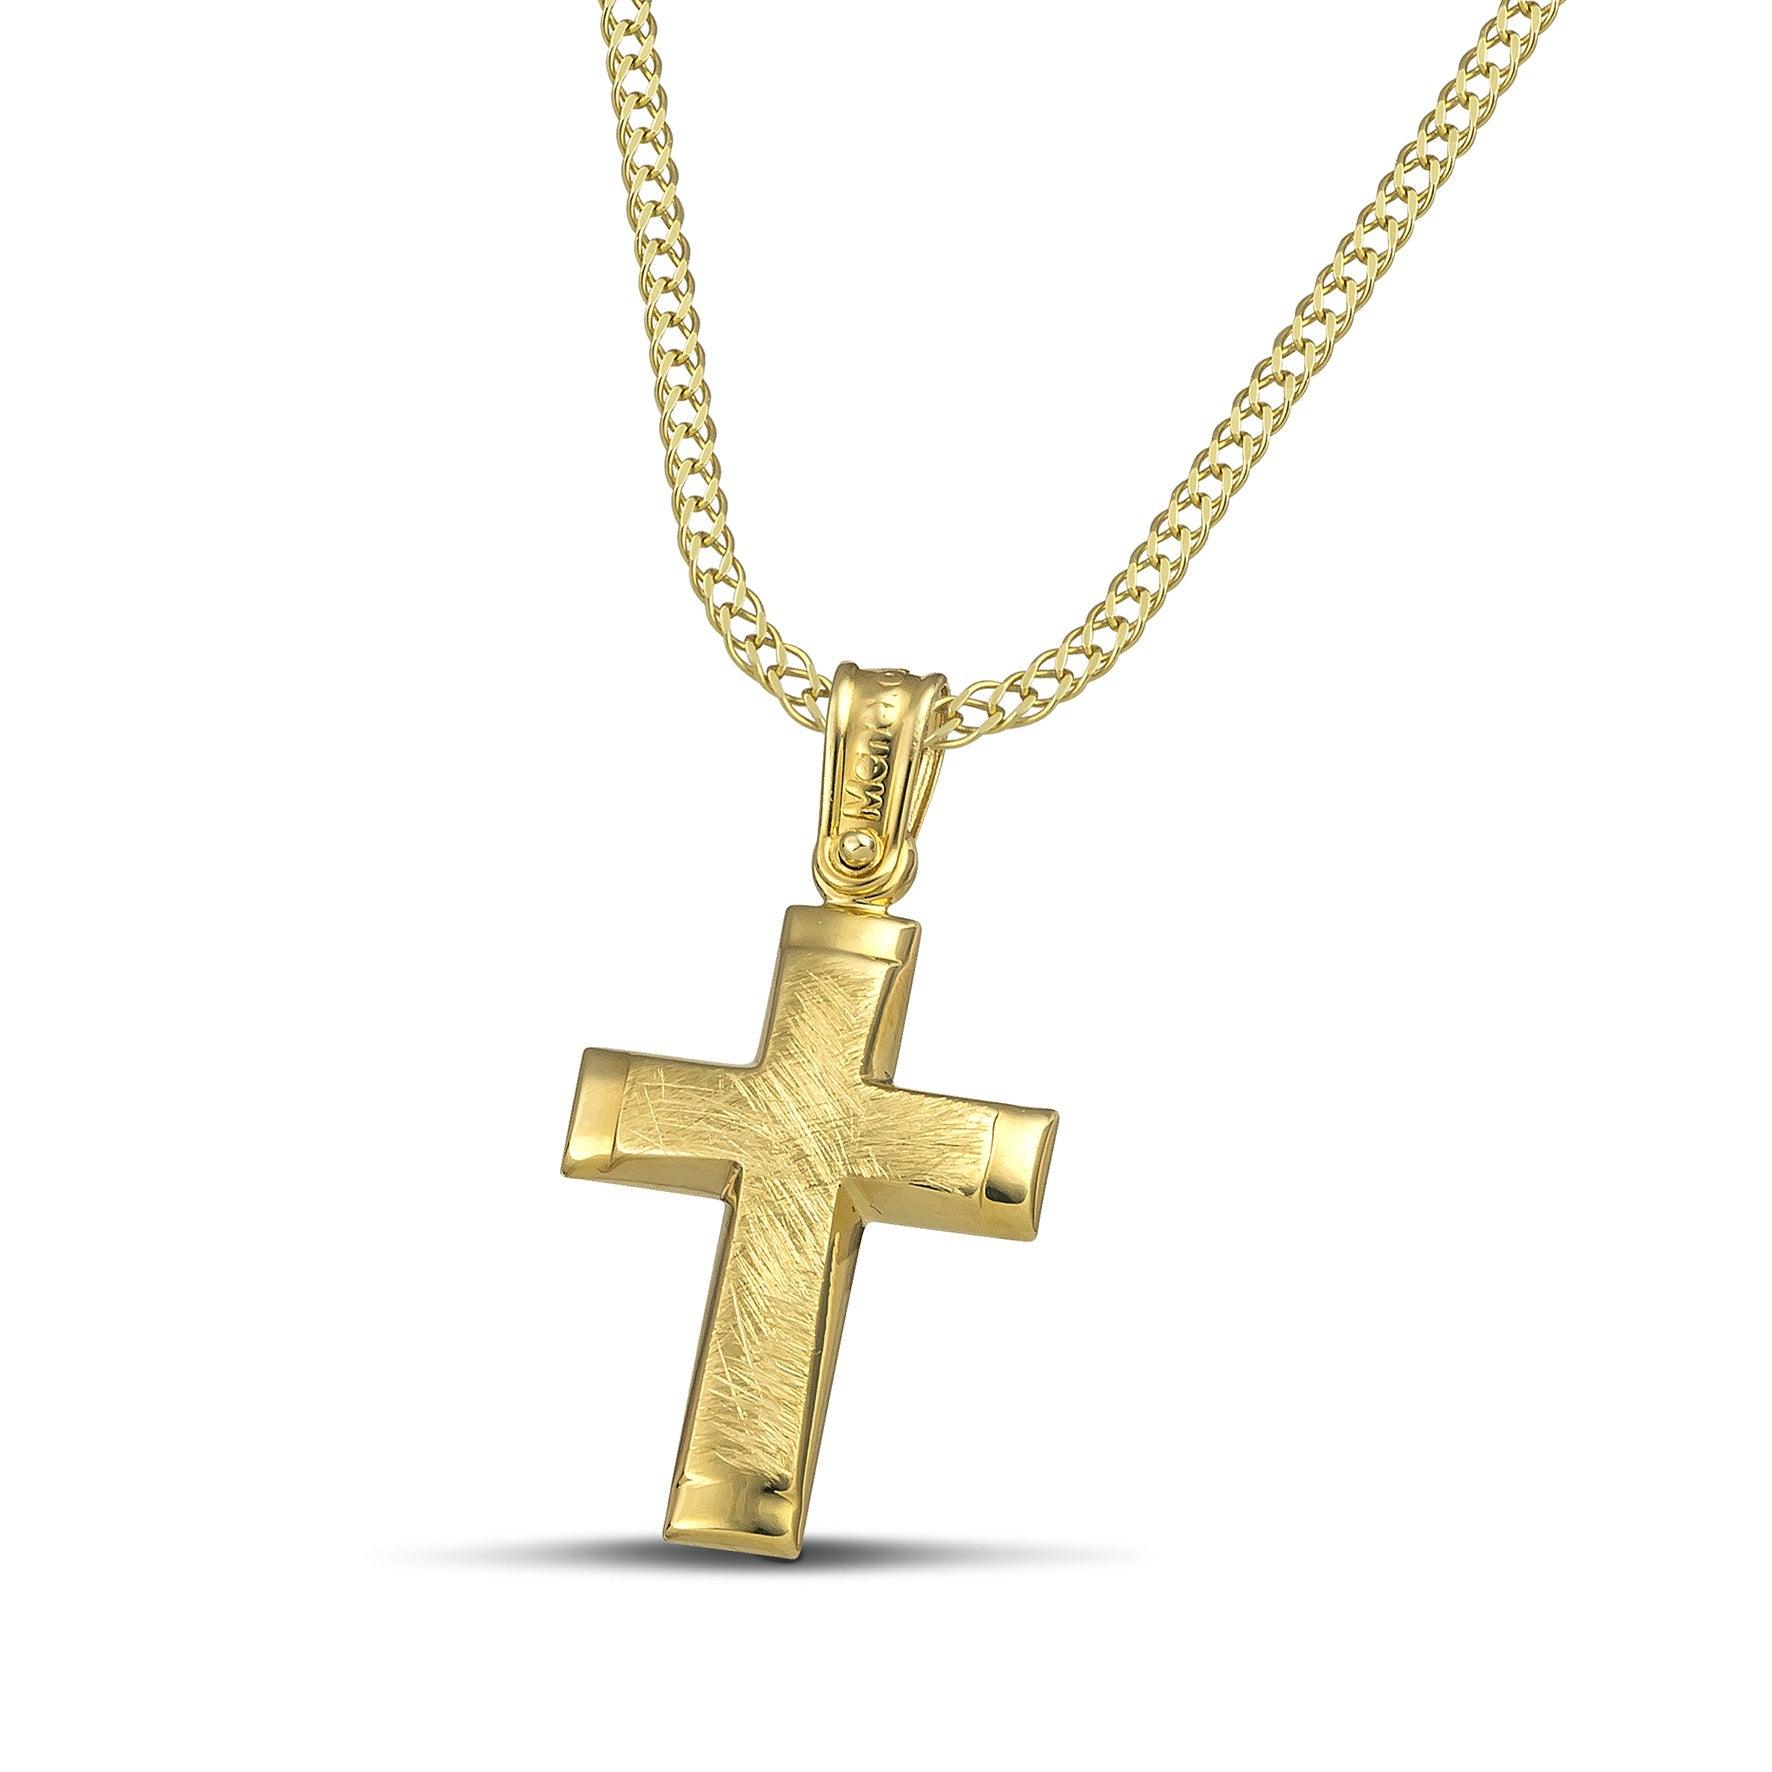 Μίνιμαλ γυναικείος σταυρός σαγρέ από χρυσό Κ14. Χειροποίητη πιστοποιημένη κατασκευή με πλεκτή αλυσίδα.